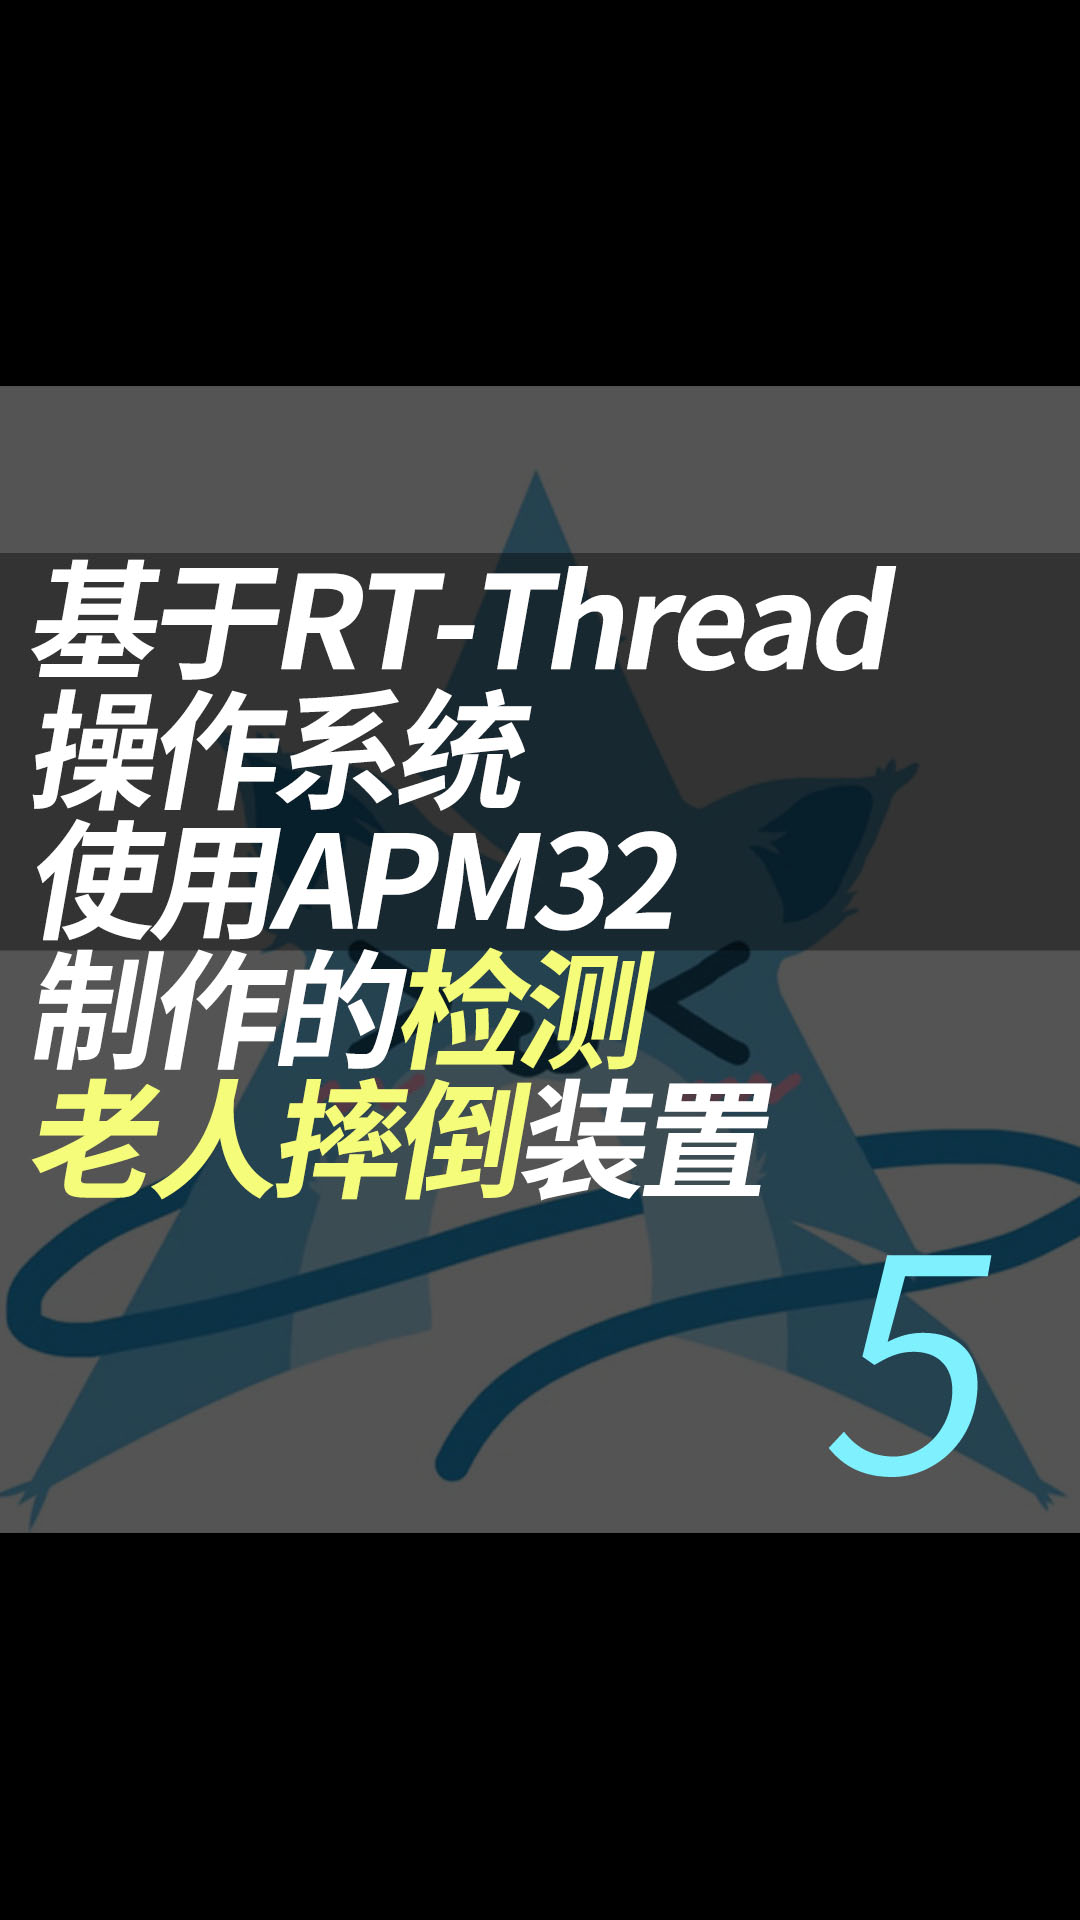 基于RT-Thread操作系统使用APM32制作的检测老人摔倒装置 - 5.项目演示#RT-Thread 